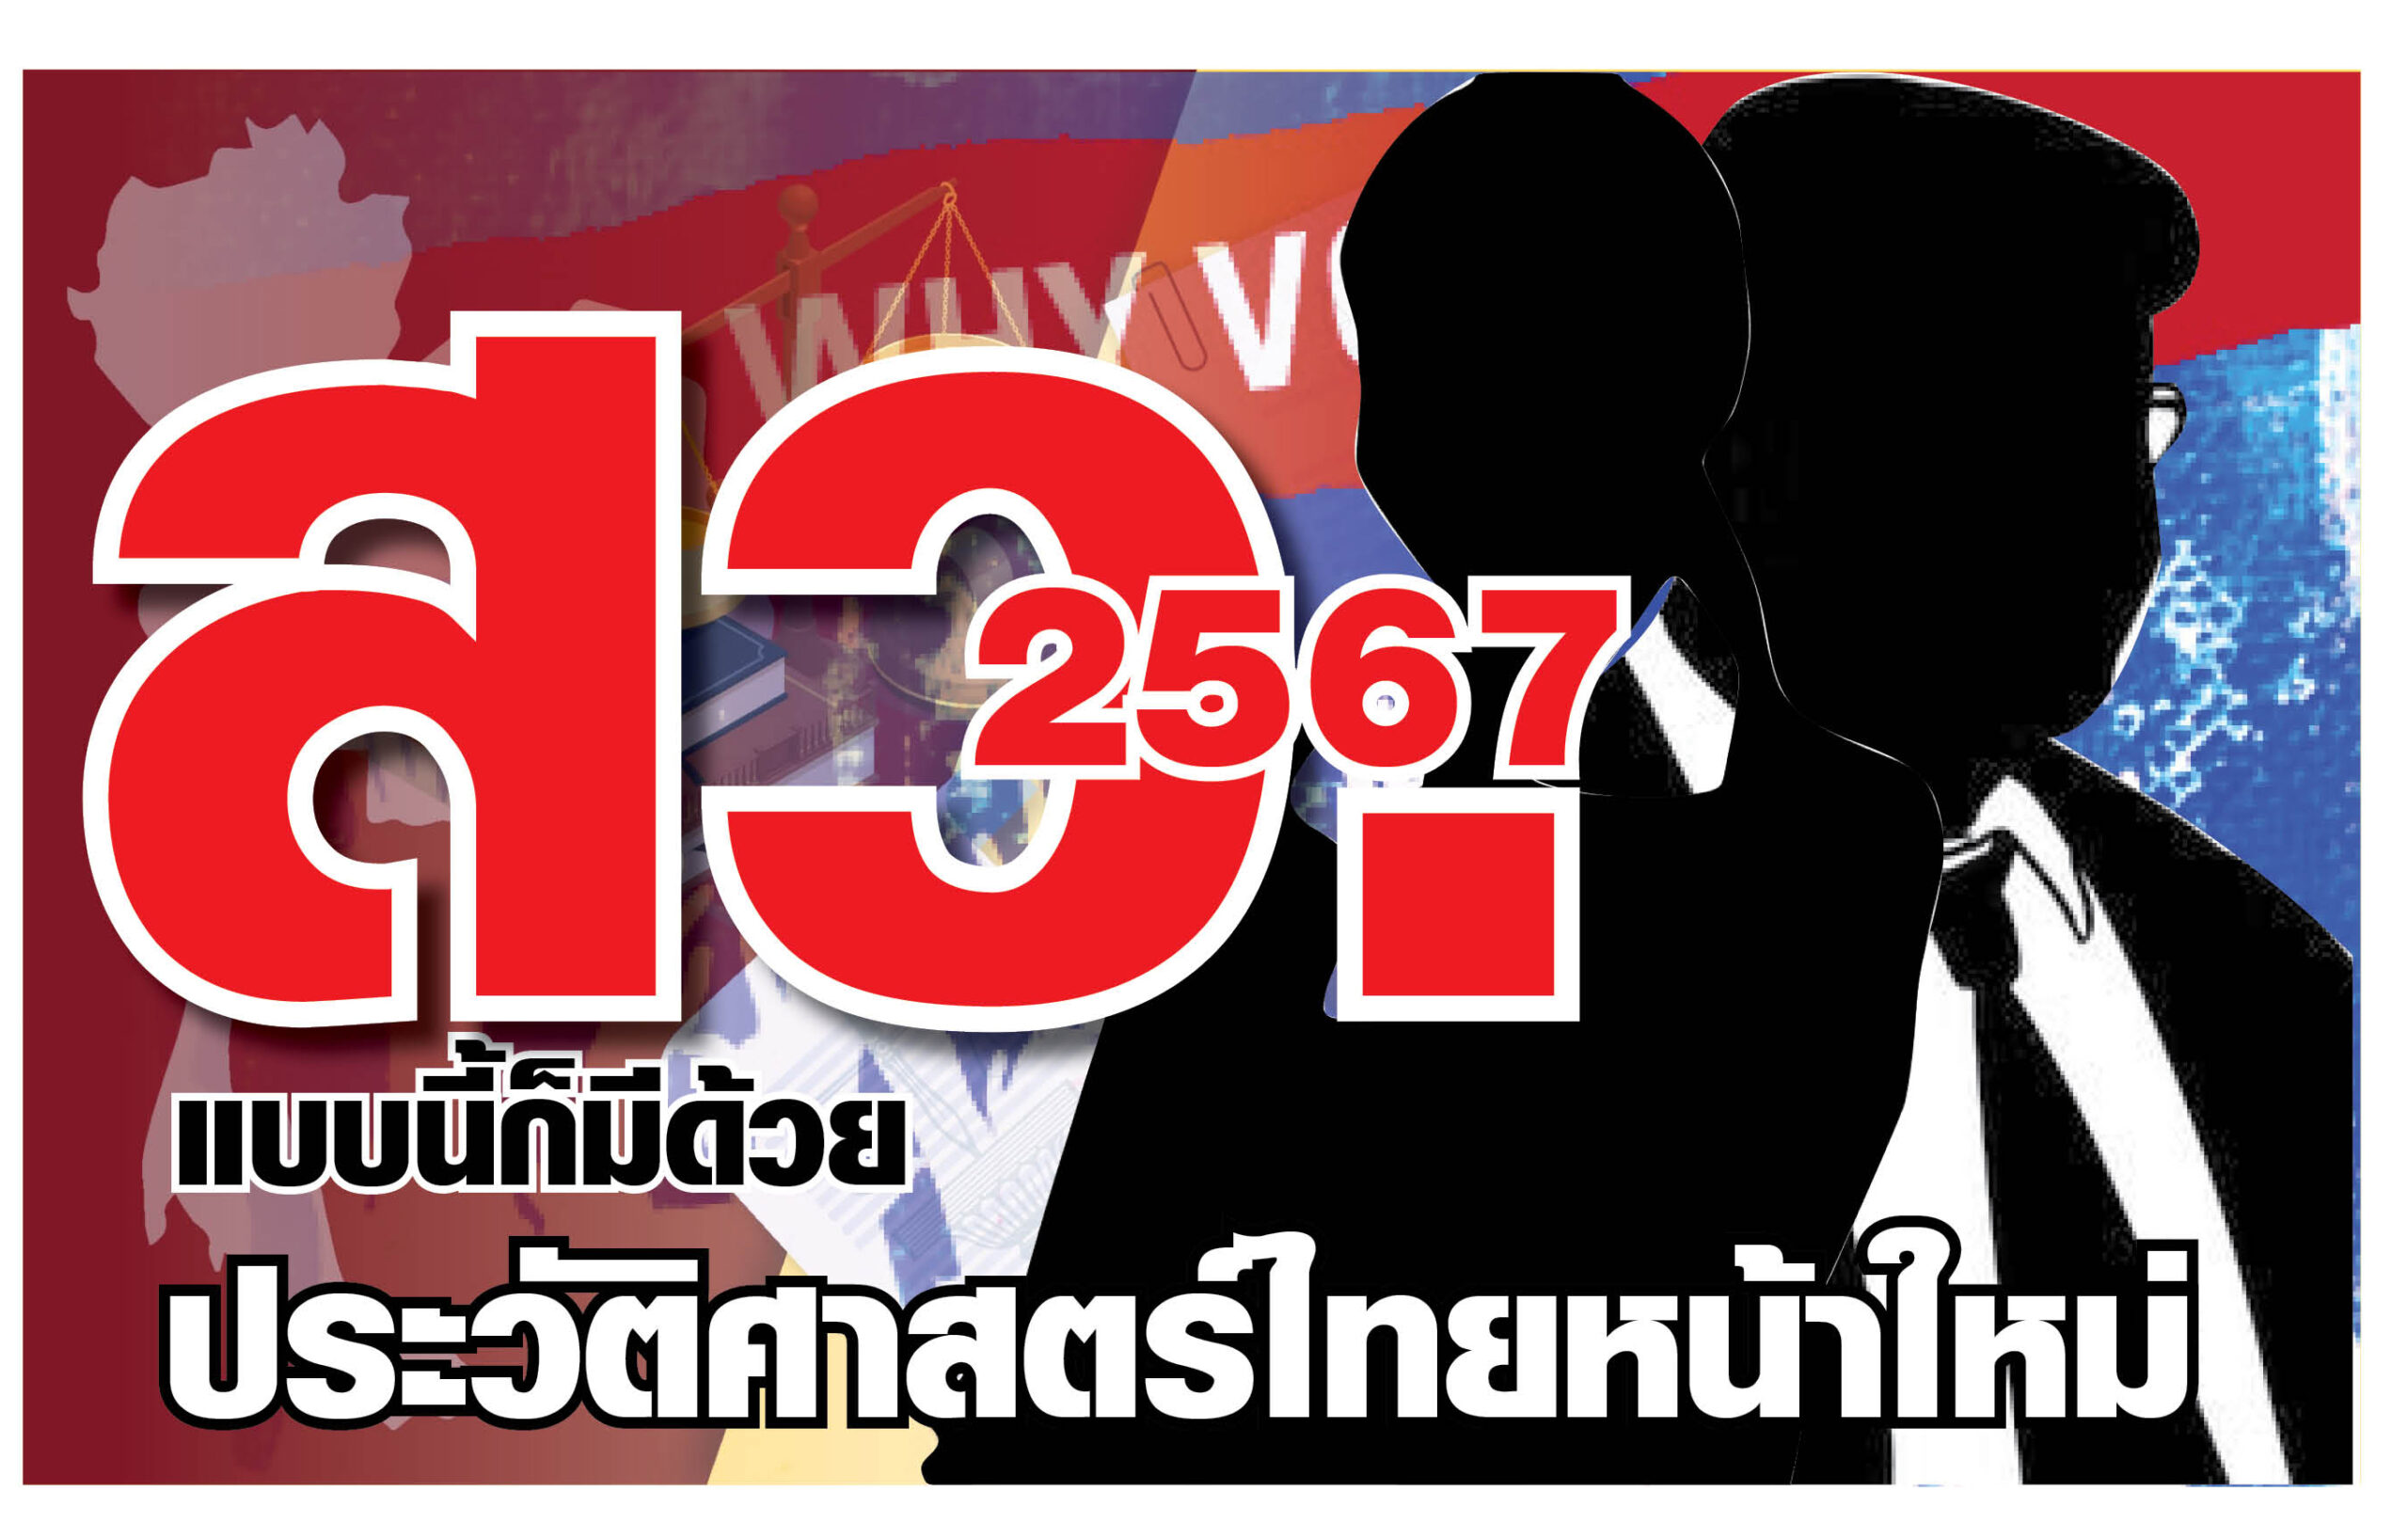 “มนุษย์ สว.2567” แบบนี้ก็มีด้วย ประวัติศาสตร์การเมืองไทยหน้าใหม่